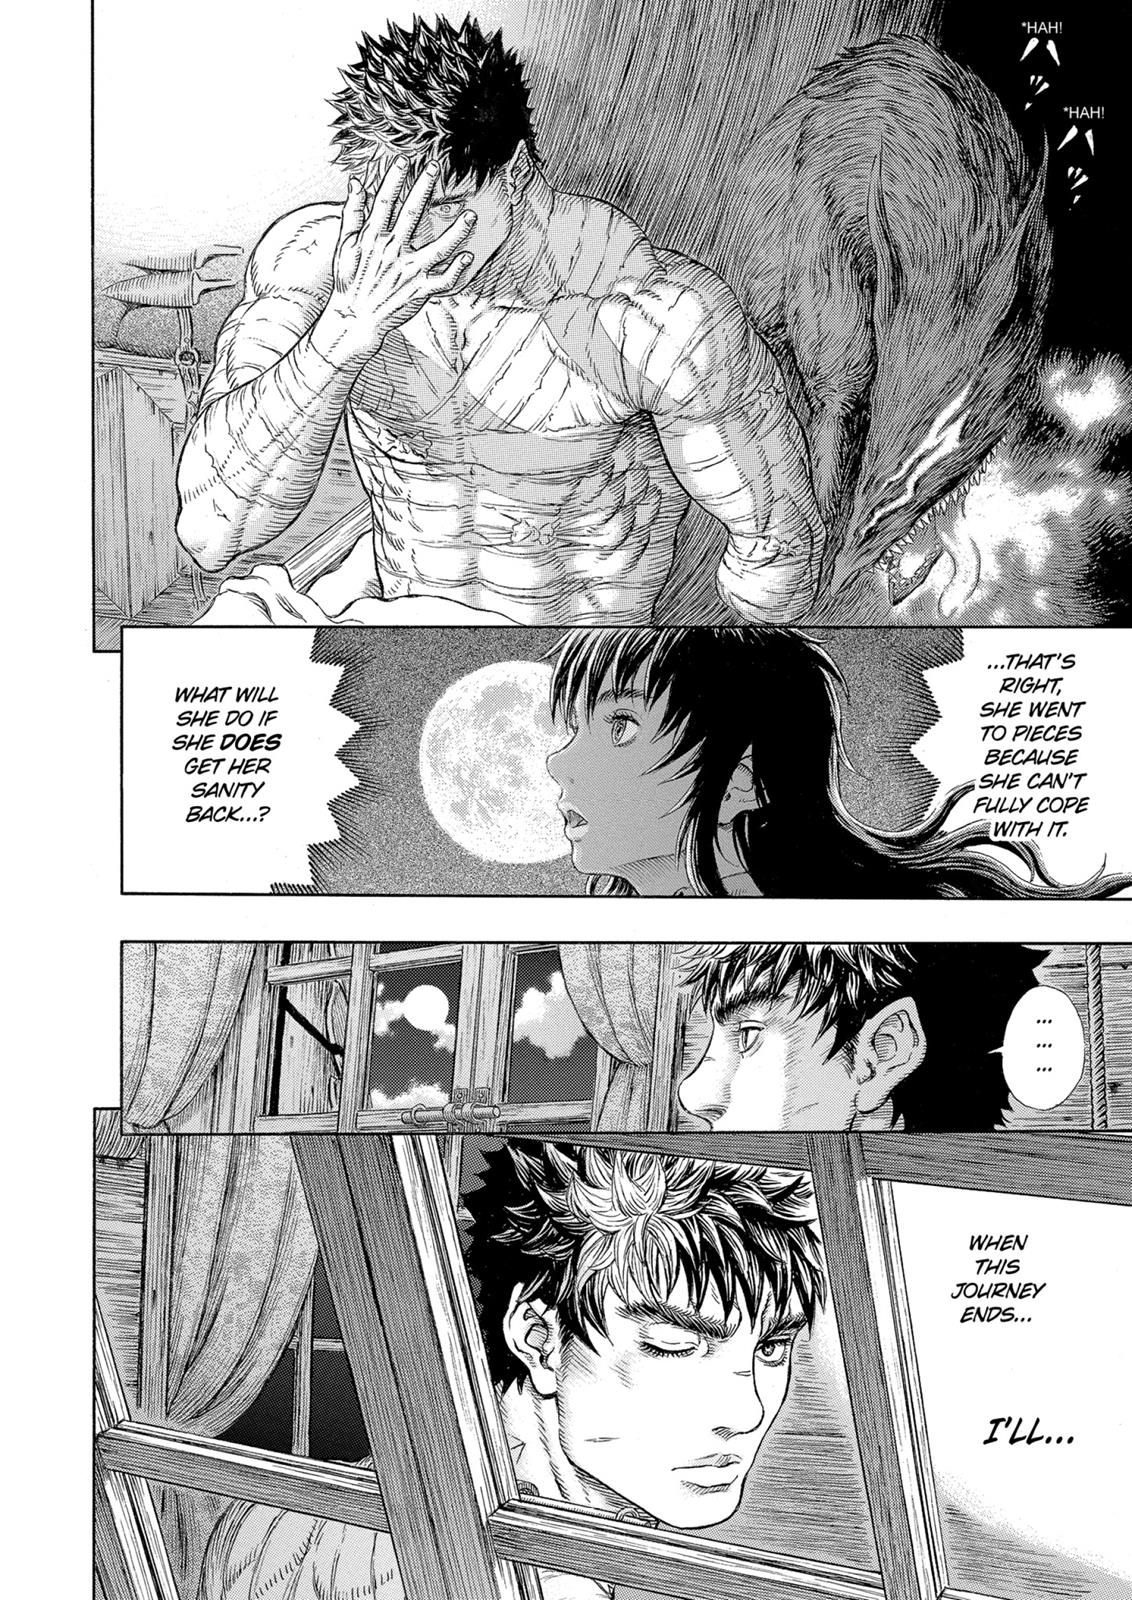 Berserk Manga Chapter 328 image 18